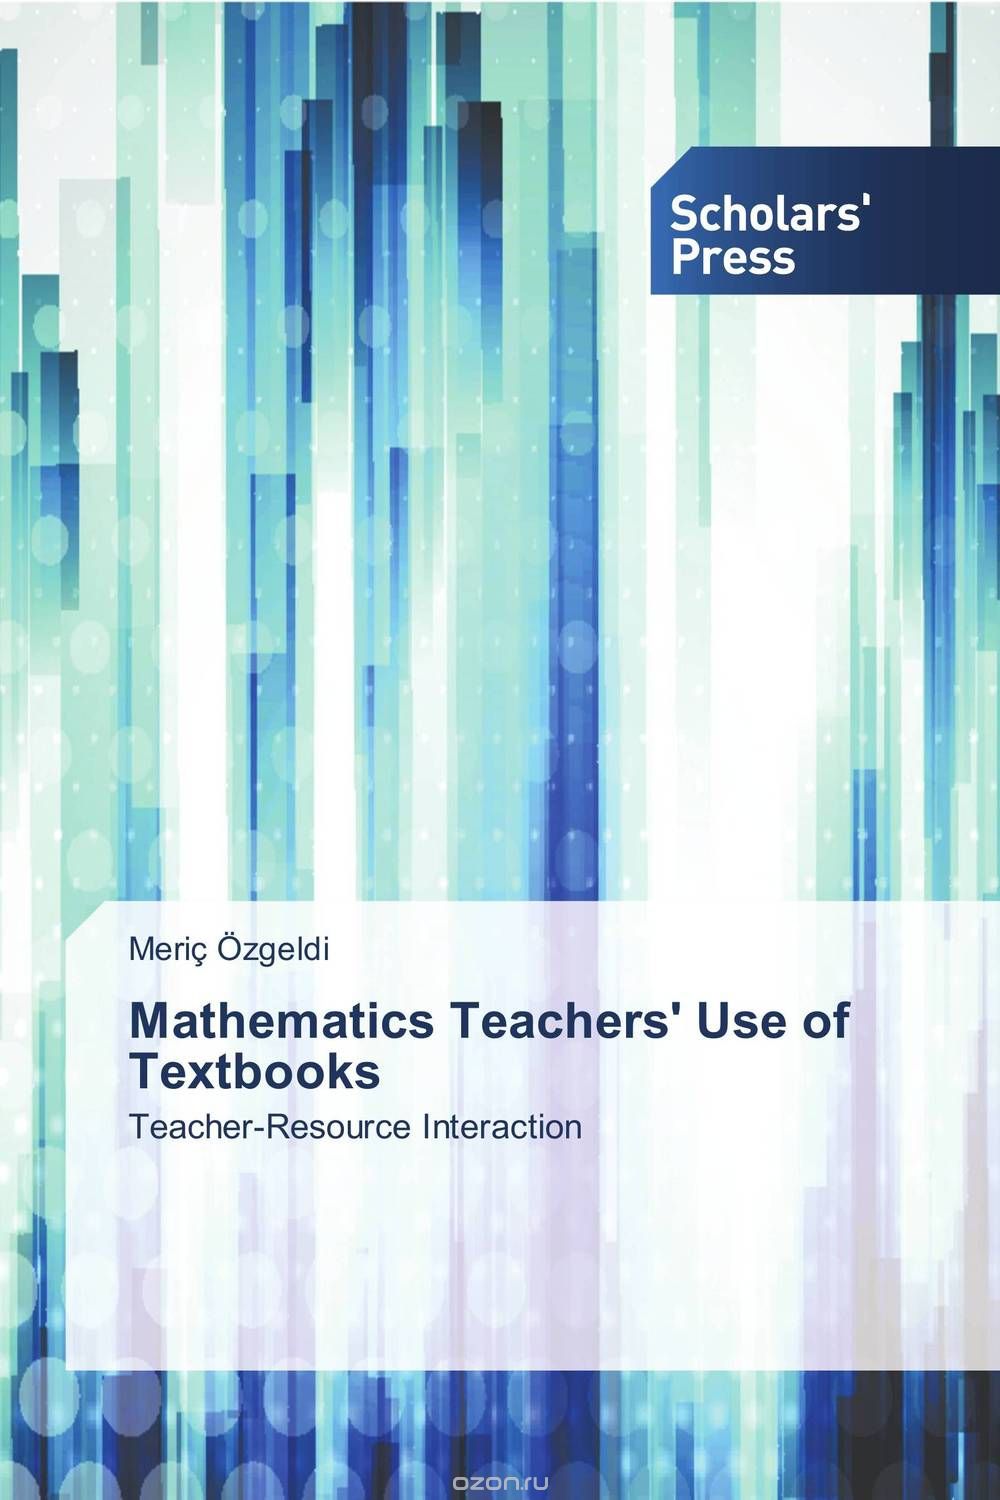 Скачать книгу "Mathematics Teachers' Use of Textbooks"